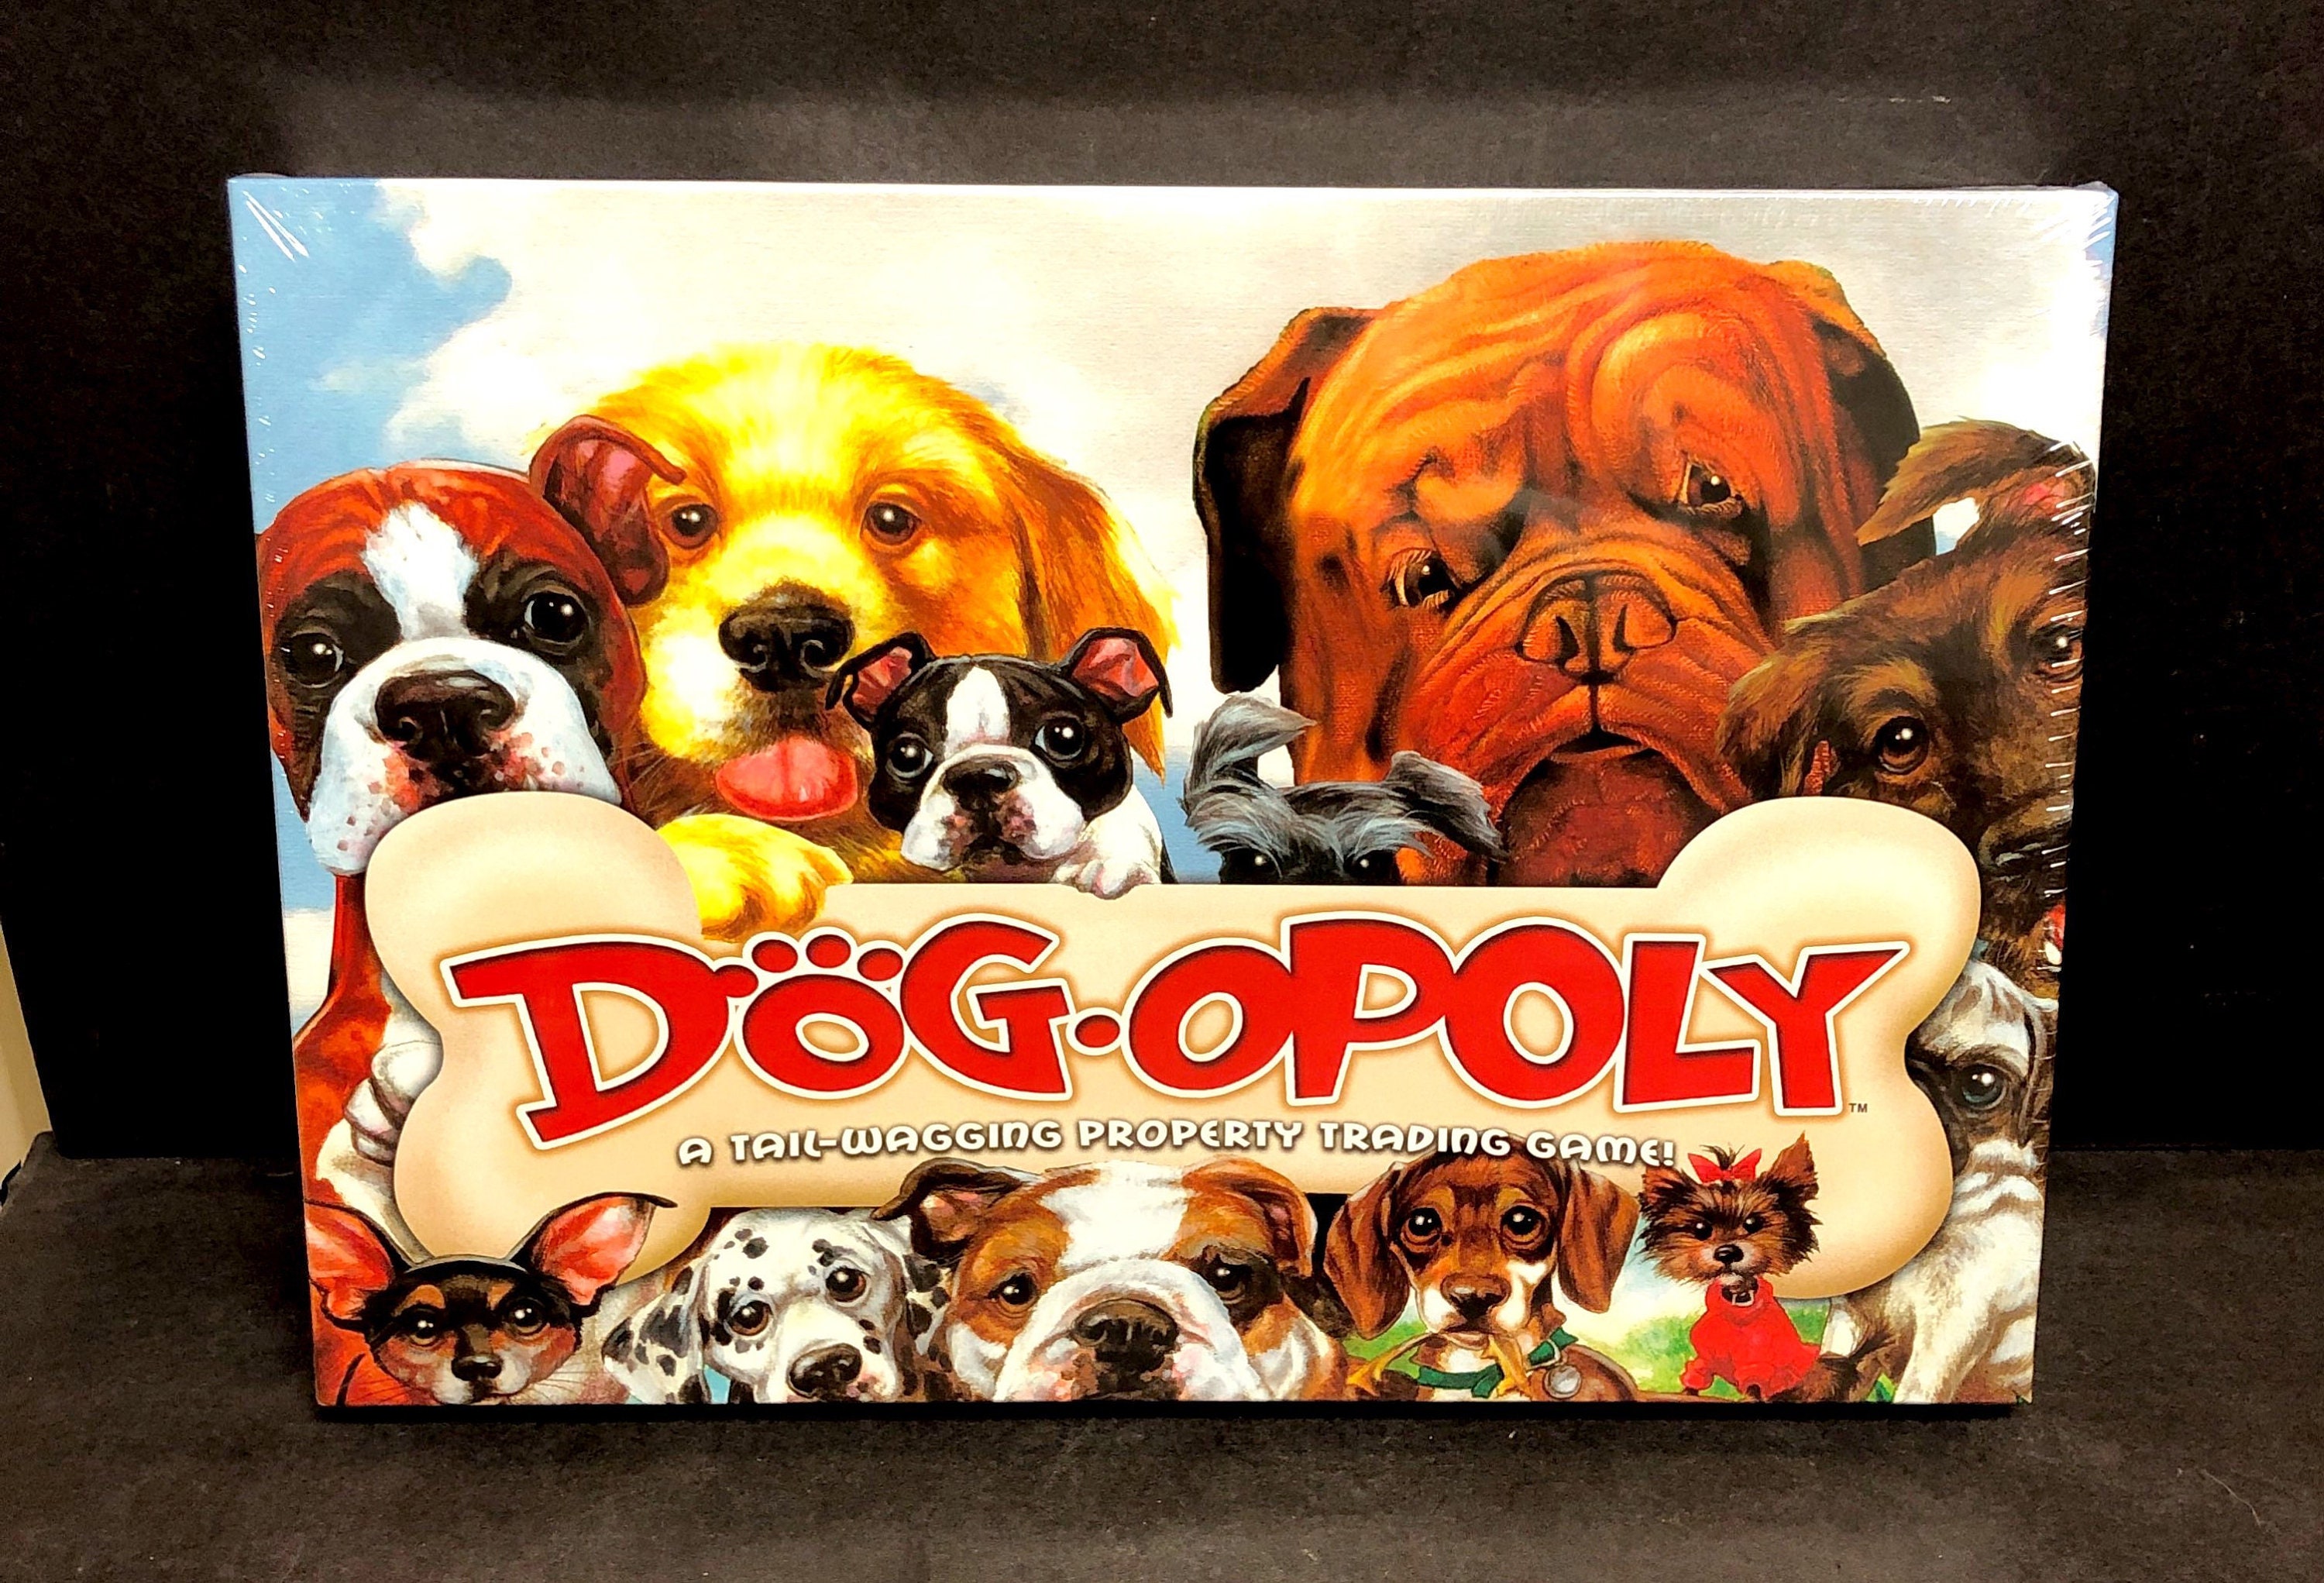 tuberculose speler slinger Collectible Dogopoly Monopoly bordspel laat voor de hemel | Etsy